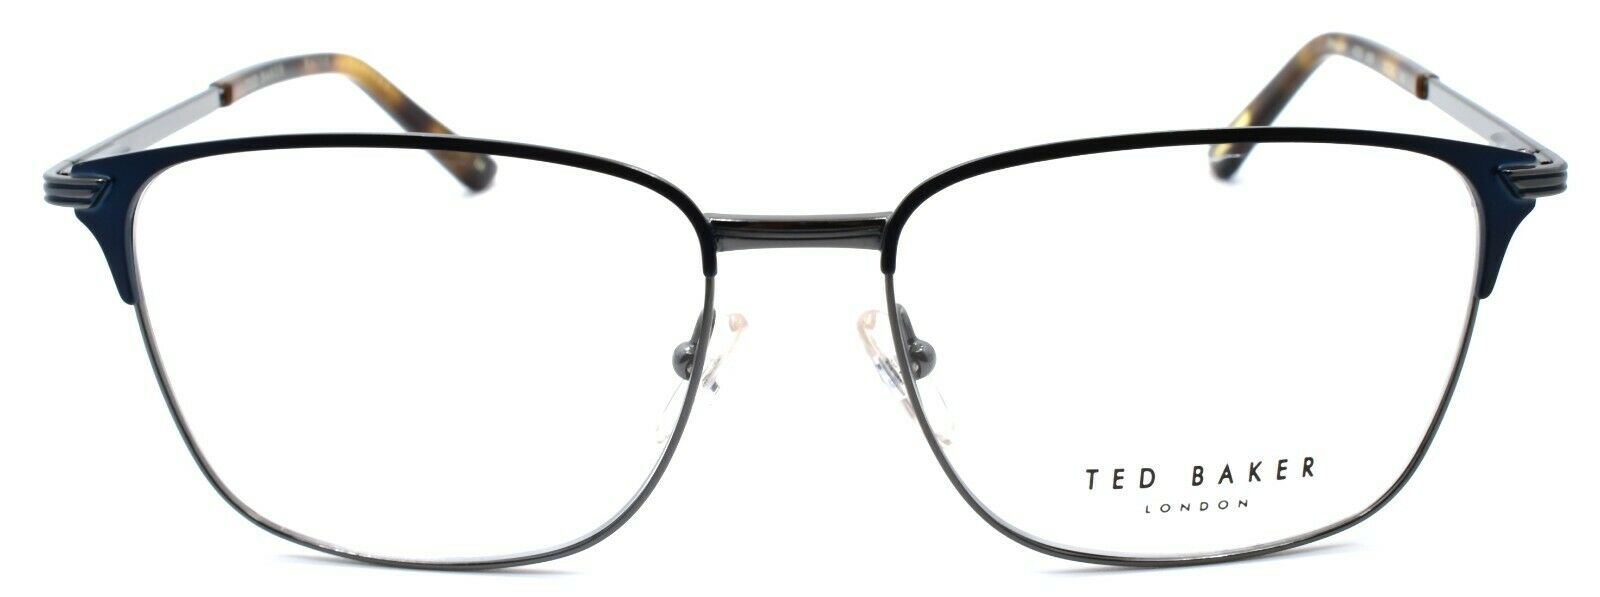 2-Ted Baker Smuggler 4235 001 Men's Eyeglasses Frames 55-16-140 Black / Gunmetal-4894327097906-IKSpecs